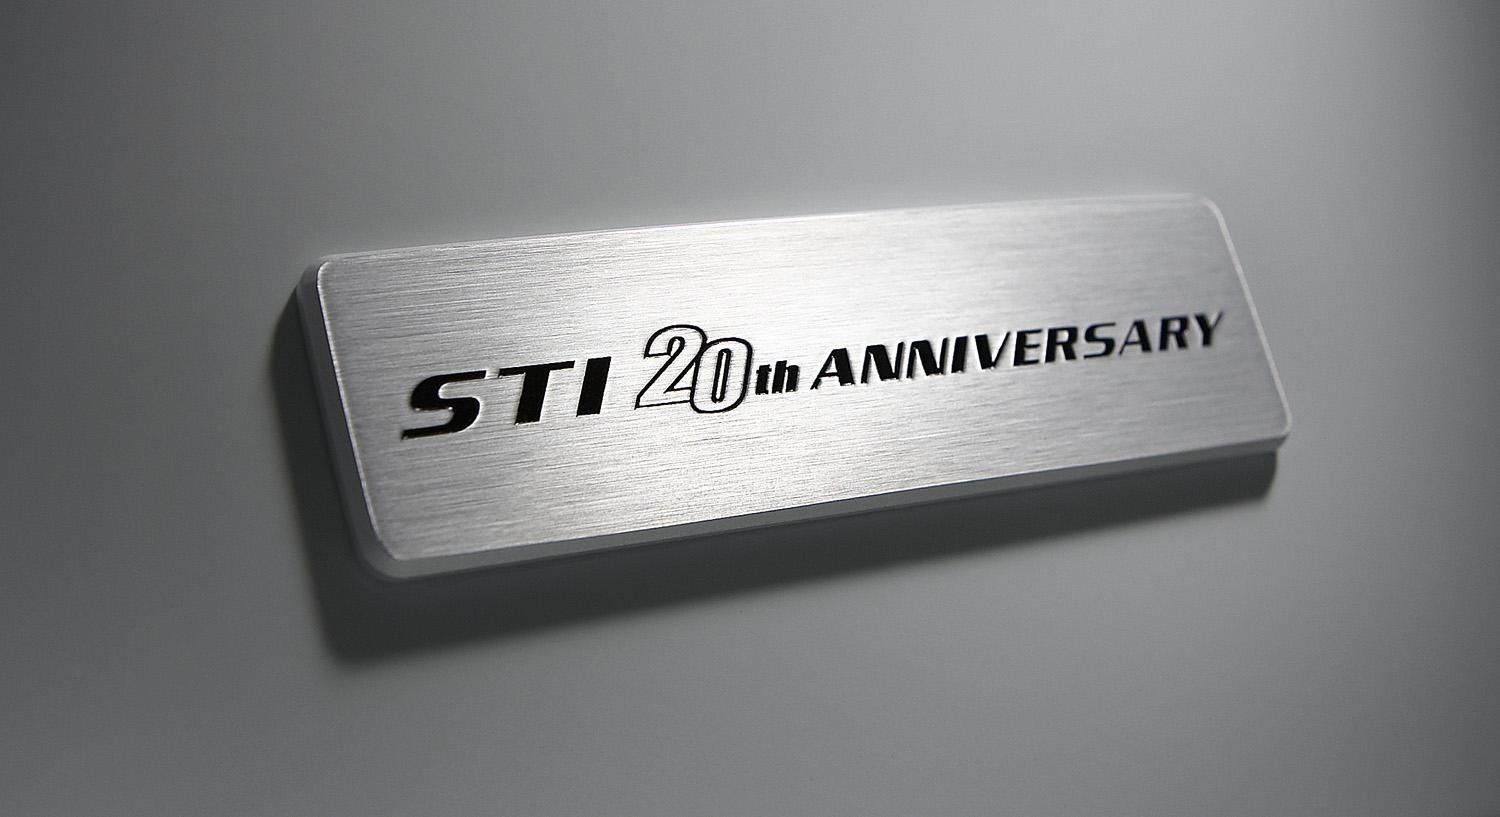 2008 Subaru Impreza WRX STI 20th anniversary edition